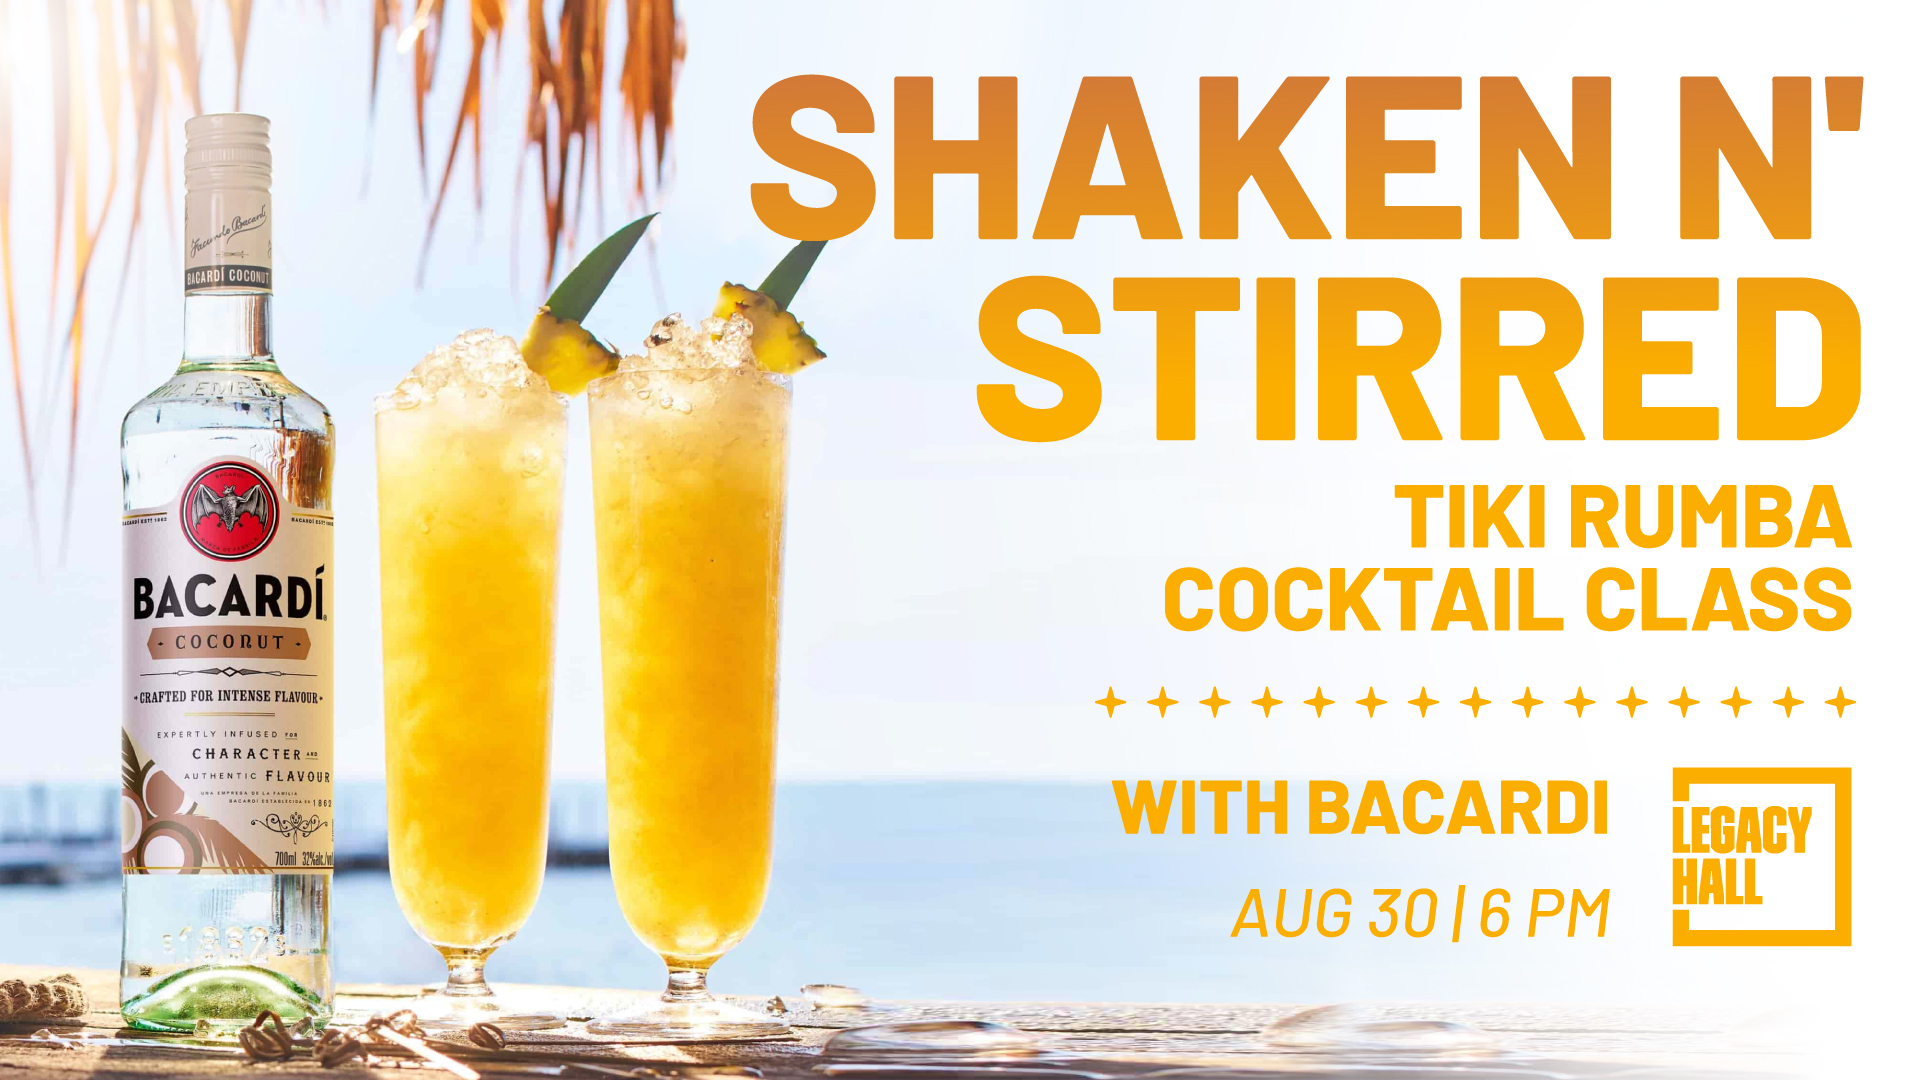 Shaken N’ Stirred: Tiki Rumba Cocktail Class - hero